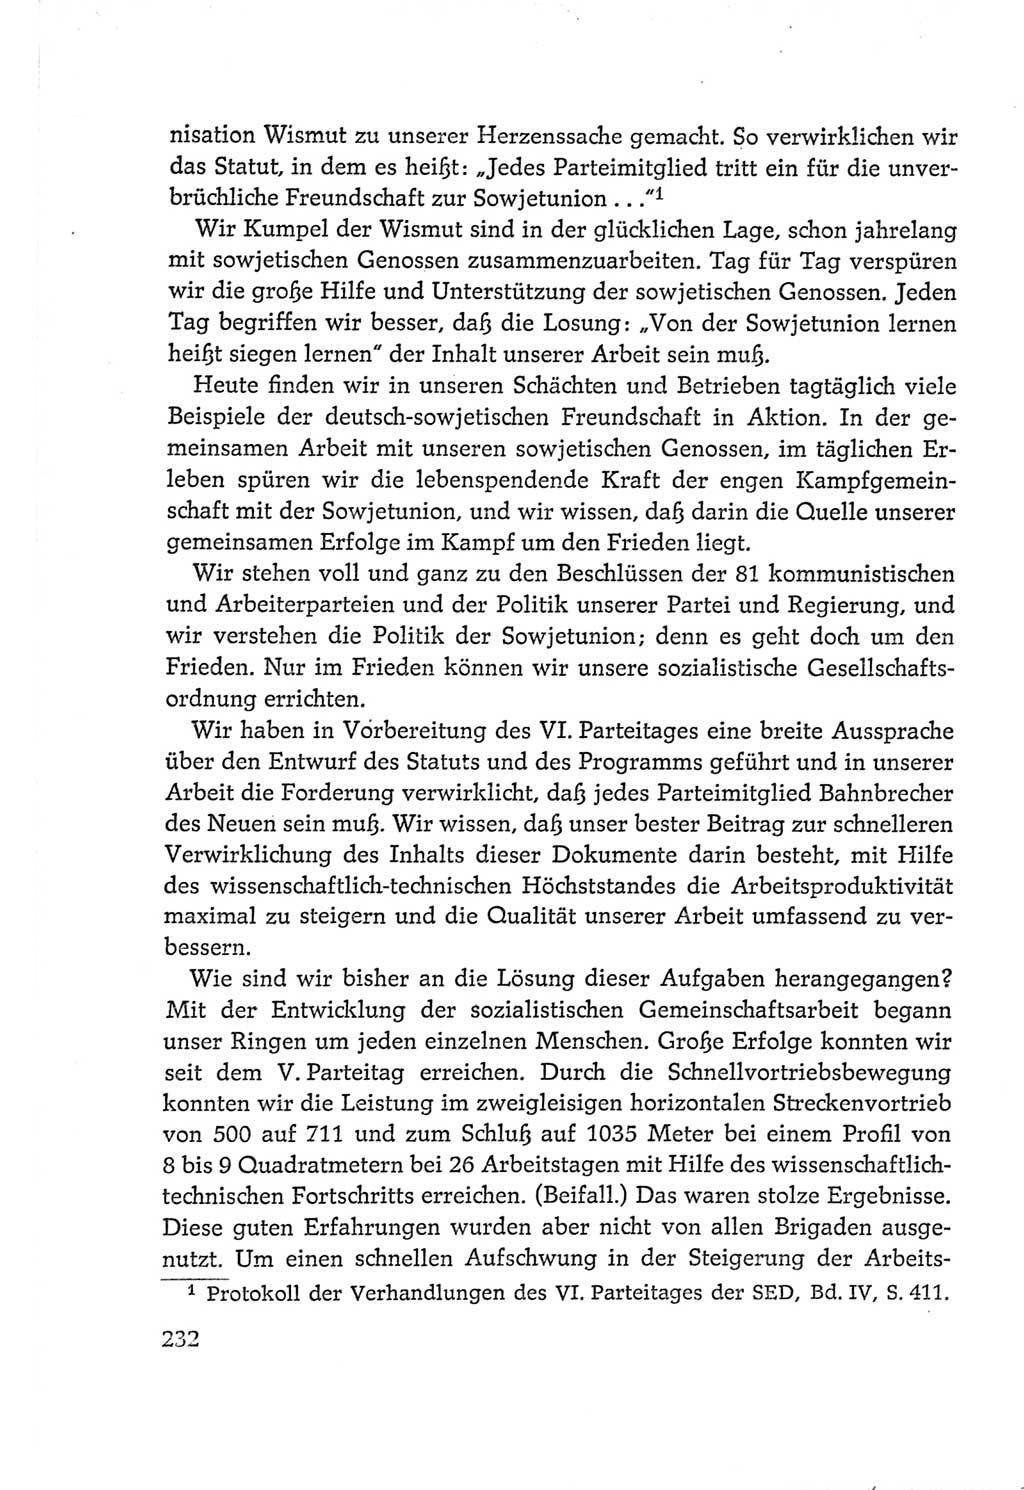 Protokoll der Verhandlungen des Ⅵ. Parteitages der Sozialistischen Einheitspartei Deutschlands (SED) [Deutsche Demokratische Republik (DDR)] 1963, Band Ⅱ, Seite 232 (Prot. Verh. Ⅵ. PT SED DDR 1963, Bd. Ⅱ, S. 232)